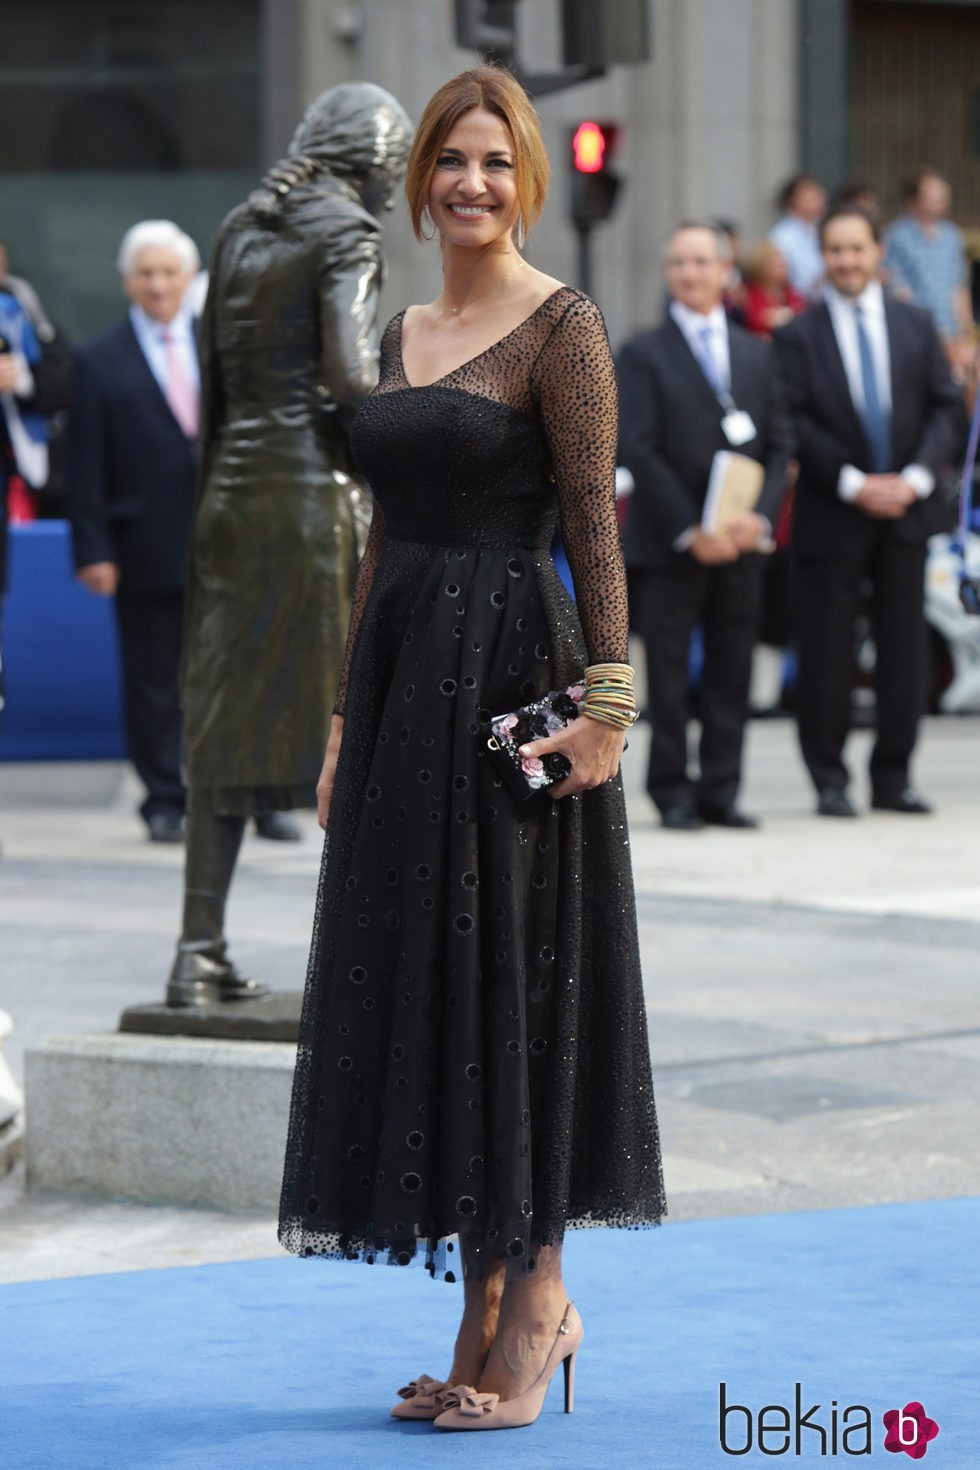 Mariló Montero en la entrega de los Premios Princesa de Asturias 2015